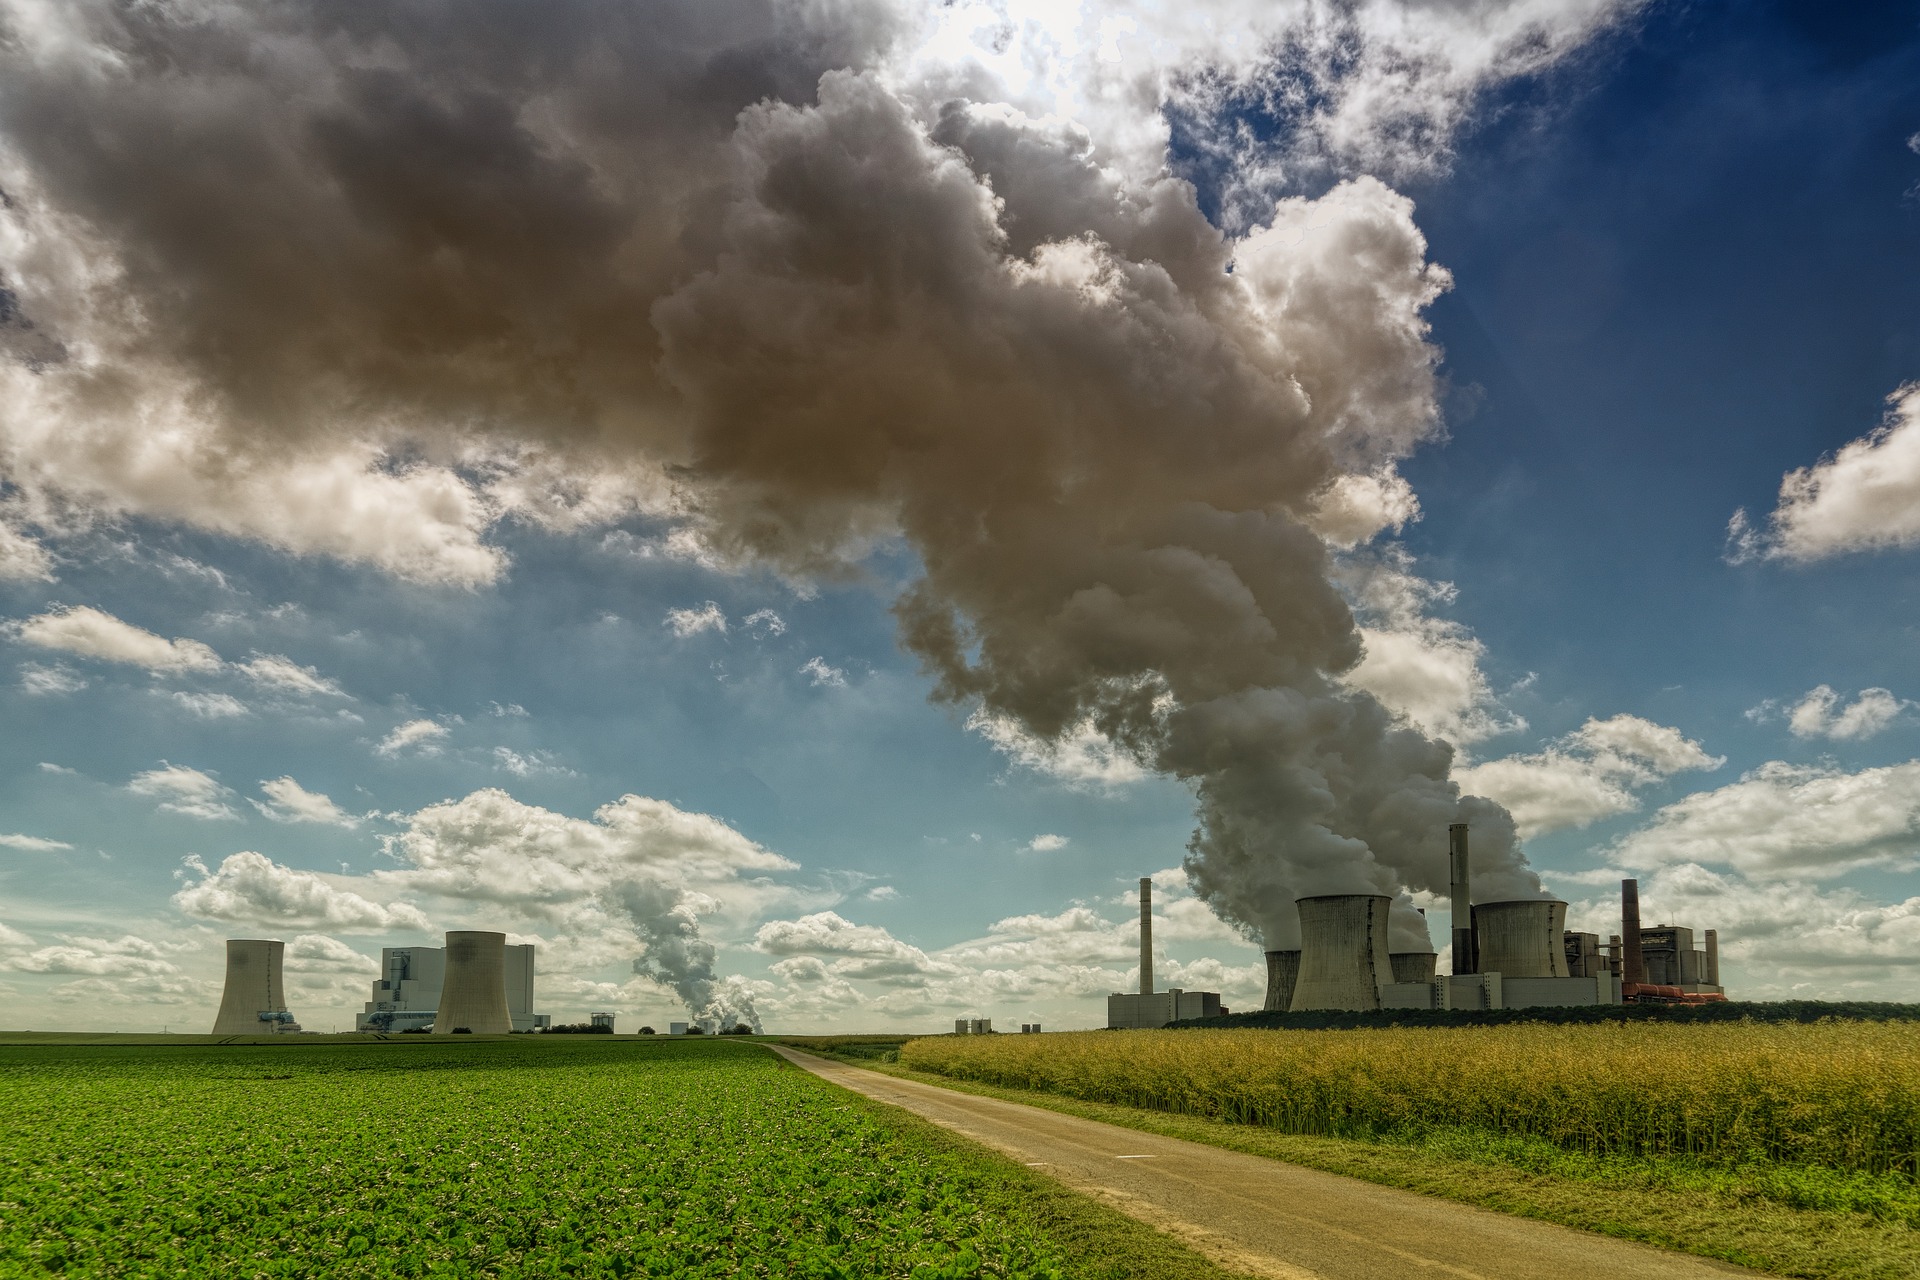 Consumo de carvão deve atingir pico em 2023, projeta Rystad, que acredita em queda nas emissões relacionadas à energia com declínio do carvão. Na imagem: Usina termelétrica a carvão, com chaminés lançando enorme volume de fumaça poluente na atmosfera (Foto: Joe/Pixabay)